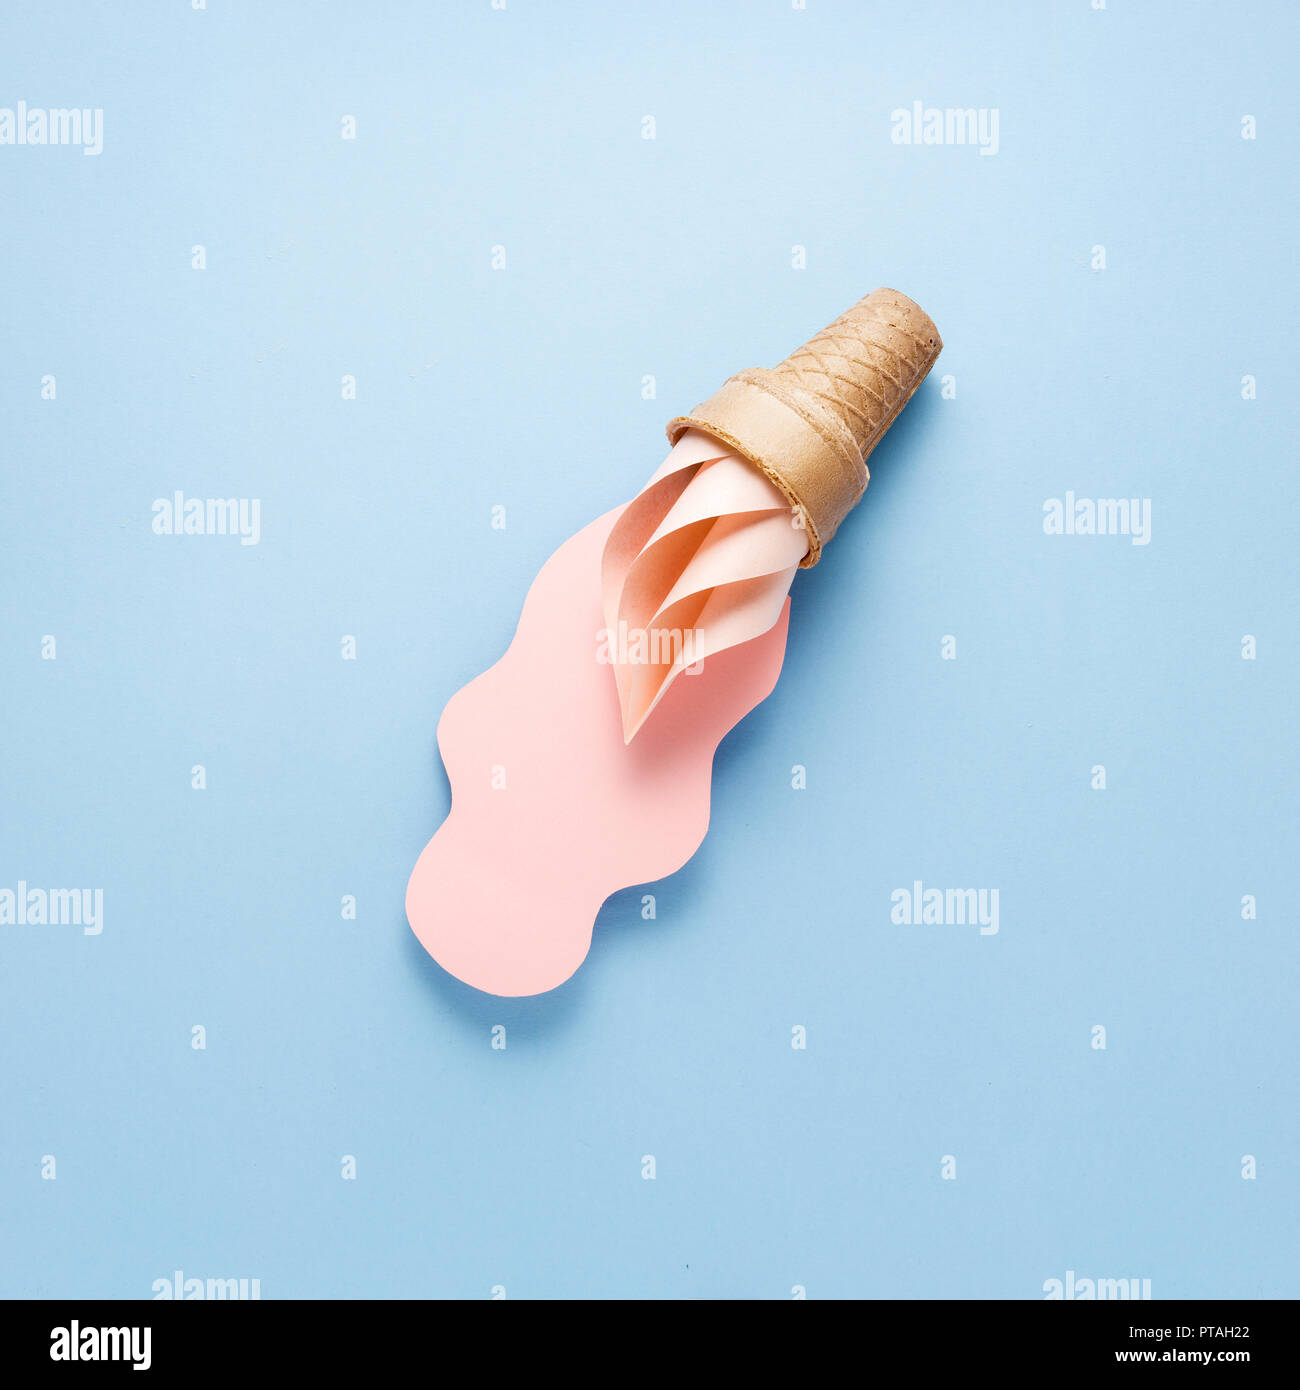 Concept créatif photo de cornet de crème glacée et splash faites de papier sur fond bleu. Banque D'Images